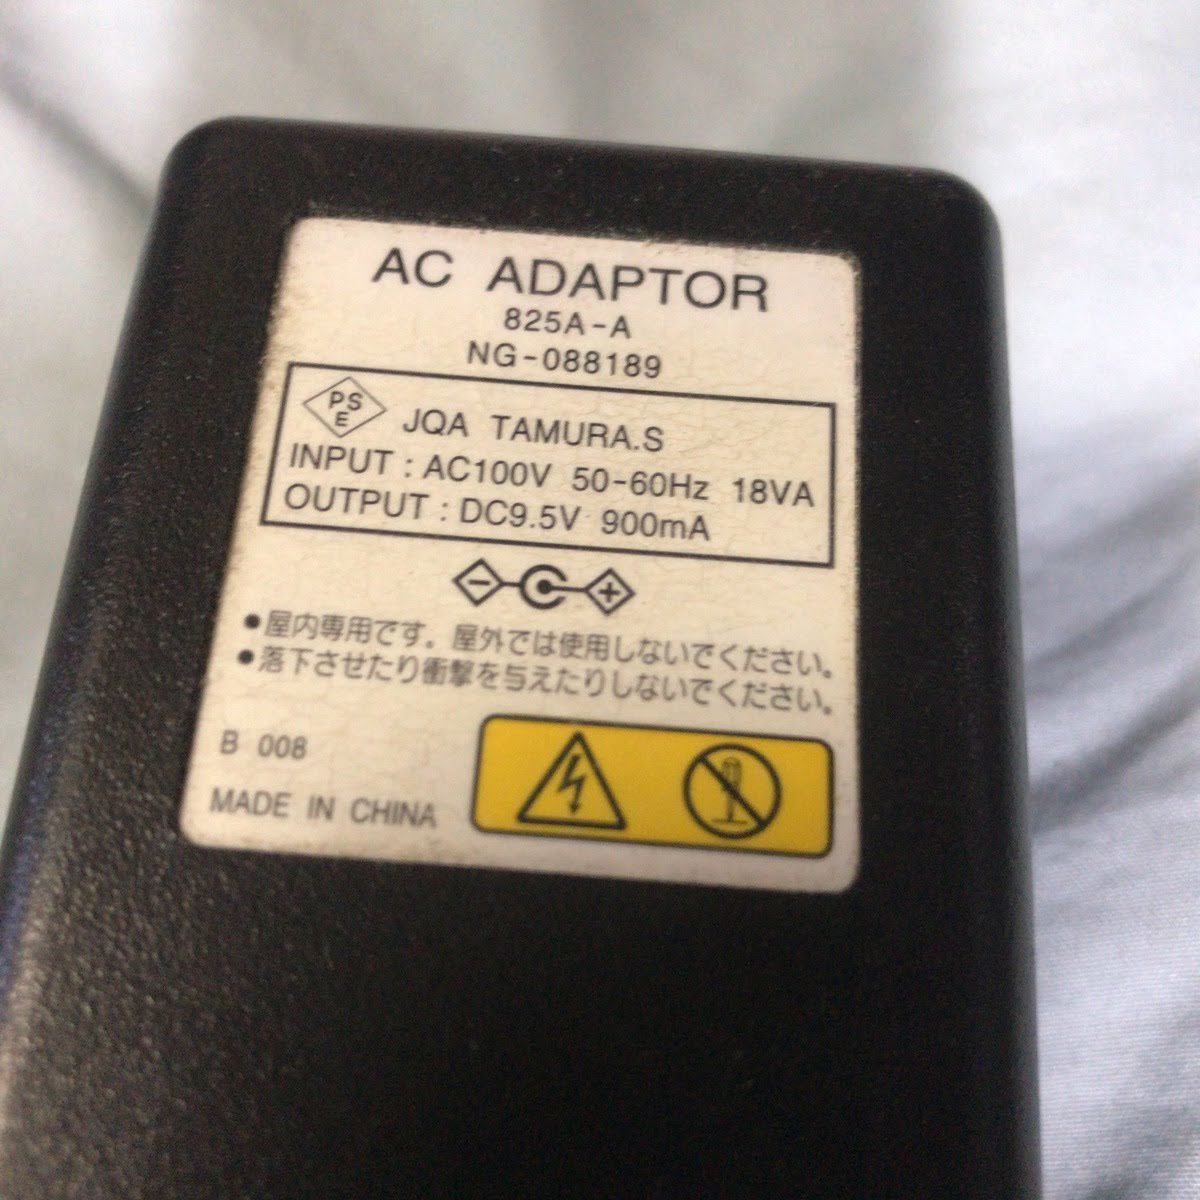 AC adaptor 825A-A NG-088189 TAMURA.S used NTT EC-13 used 